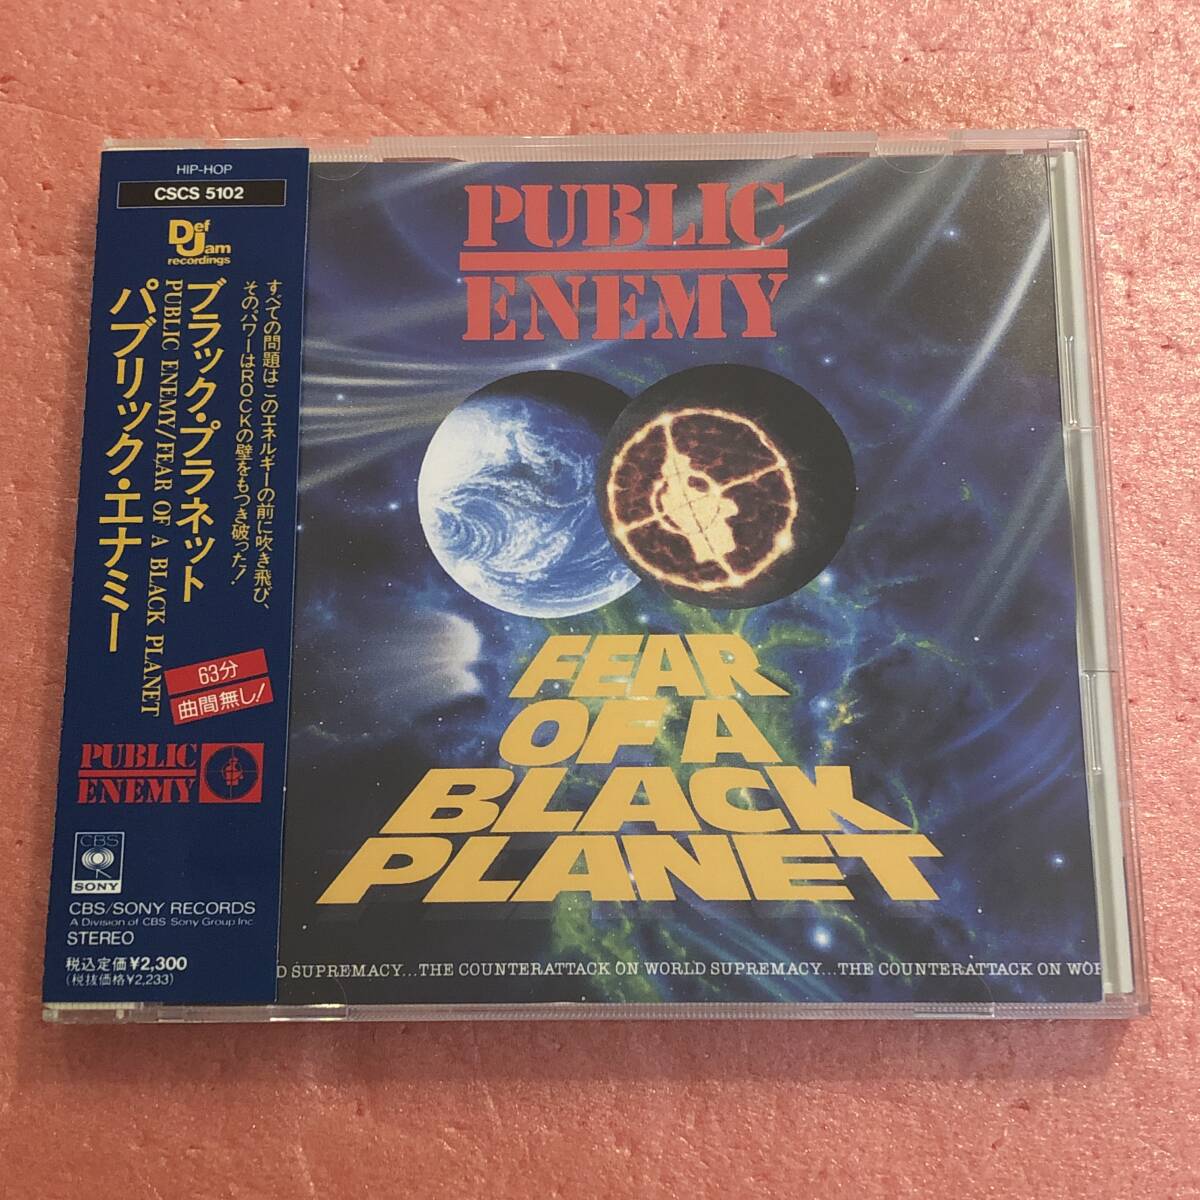 CD 国内盤 帯付 パブリック エナミー ブラック プラネット Public Enemy Fear Of A Black Planetの画像1